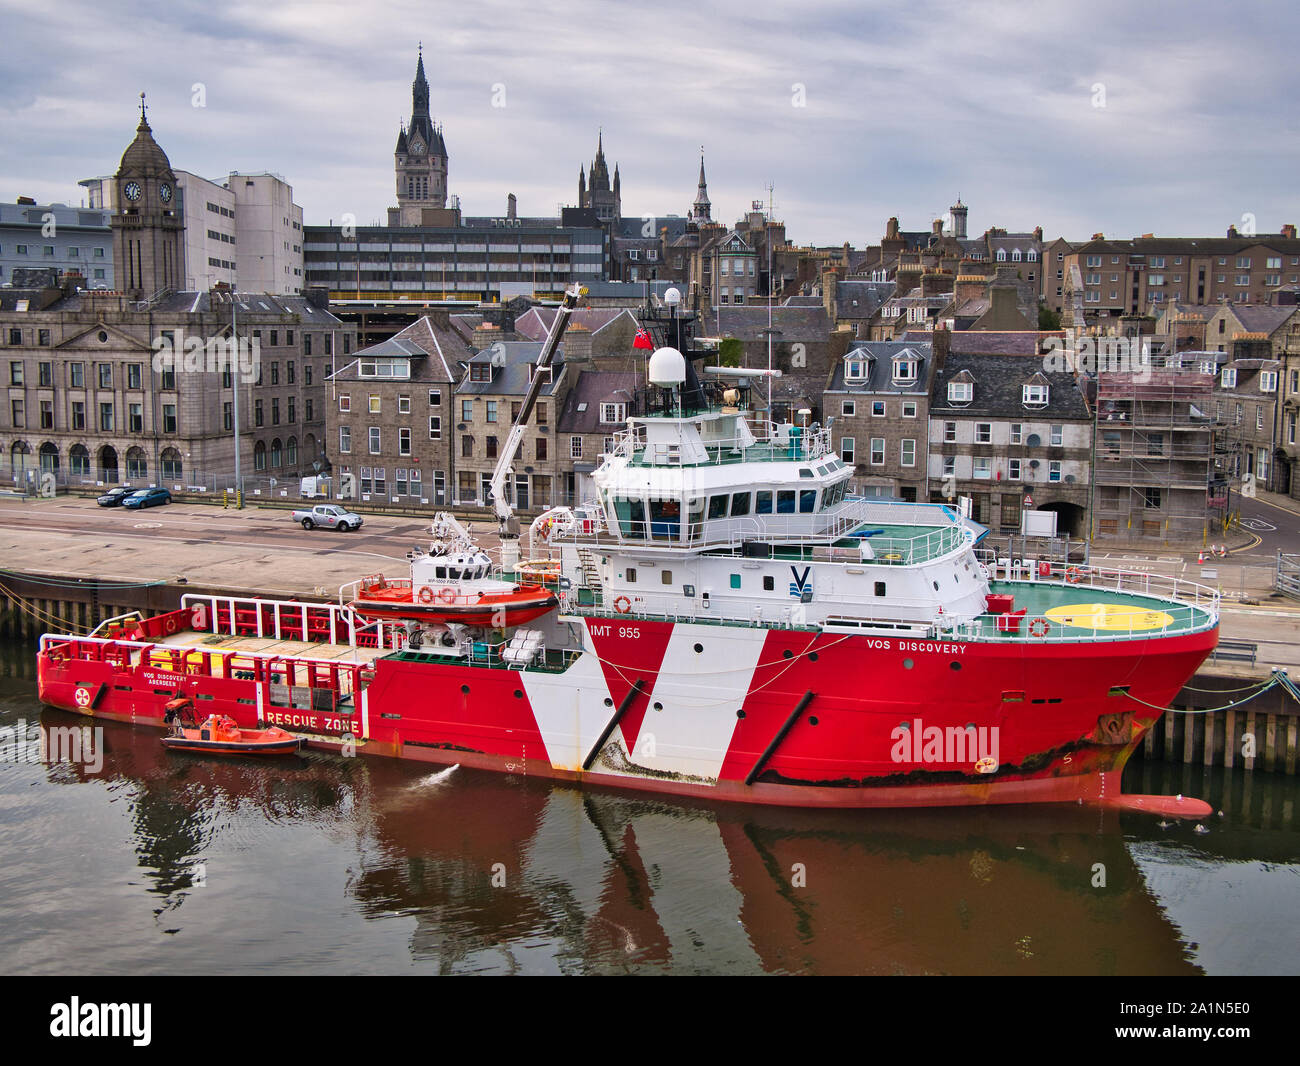 Vos Entdeckung Anker im Hafen von Aberdeen, Schottland, Großbritannien - dieses Schiff ist eine Offshore Tug/Schiff zur Versorgung in 2007 gebaut. Stockfoto